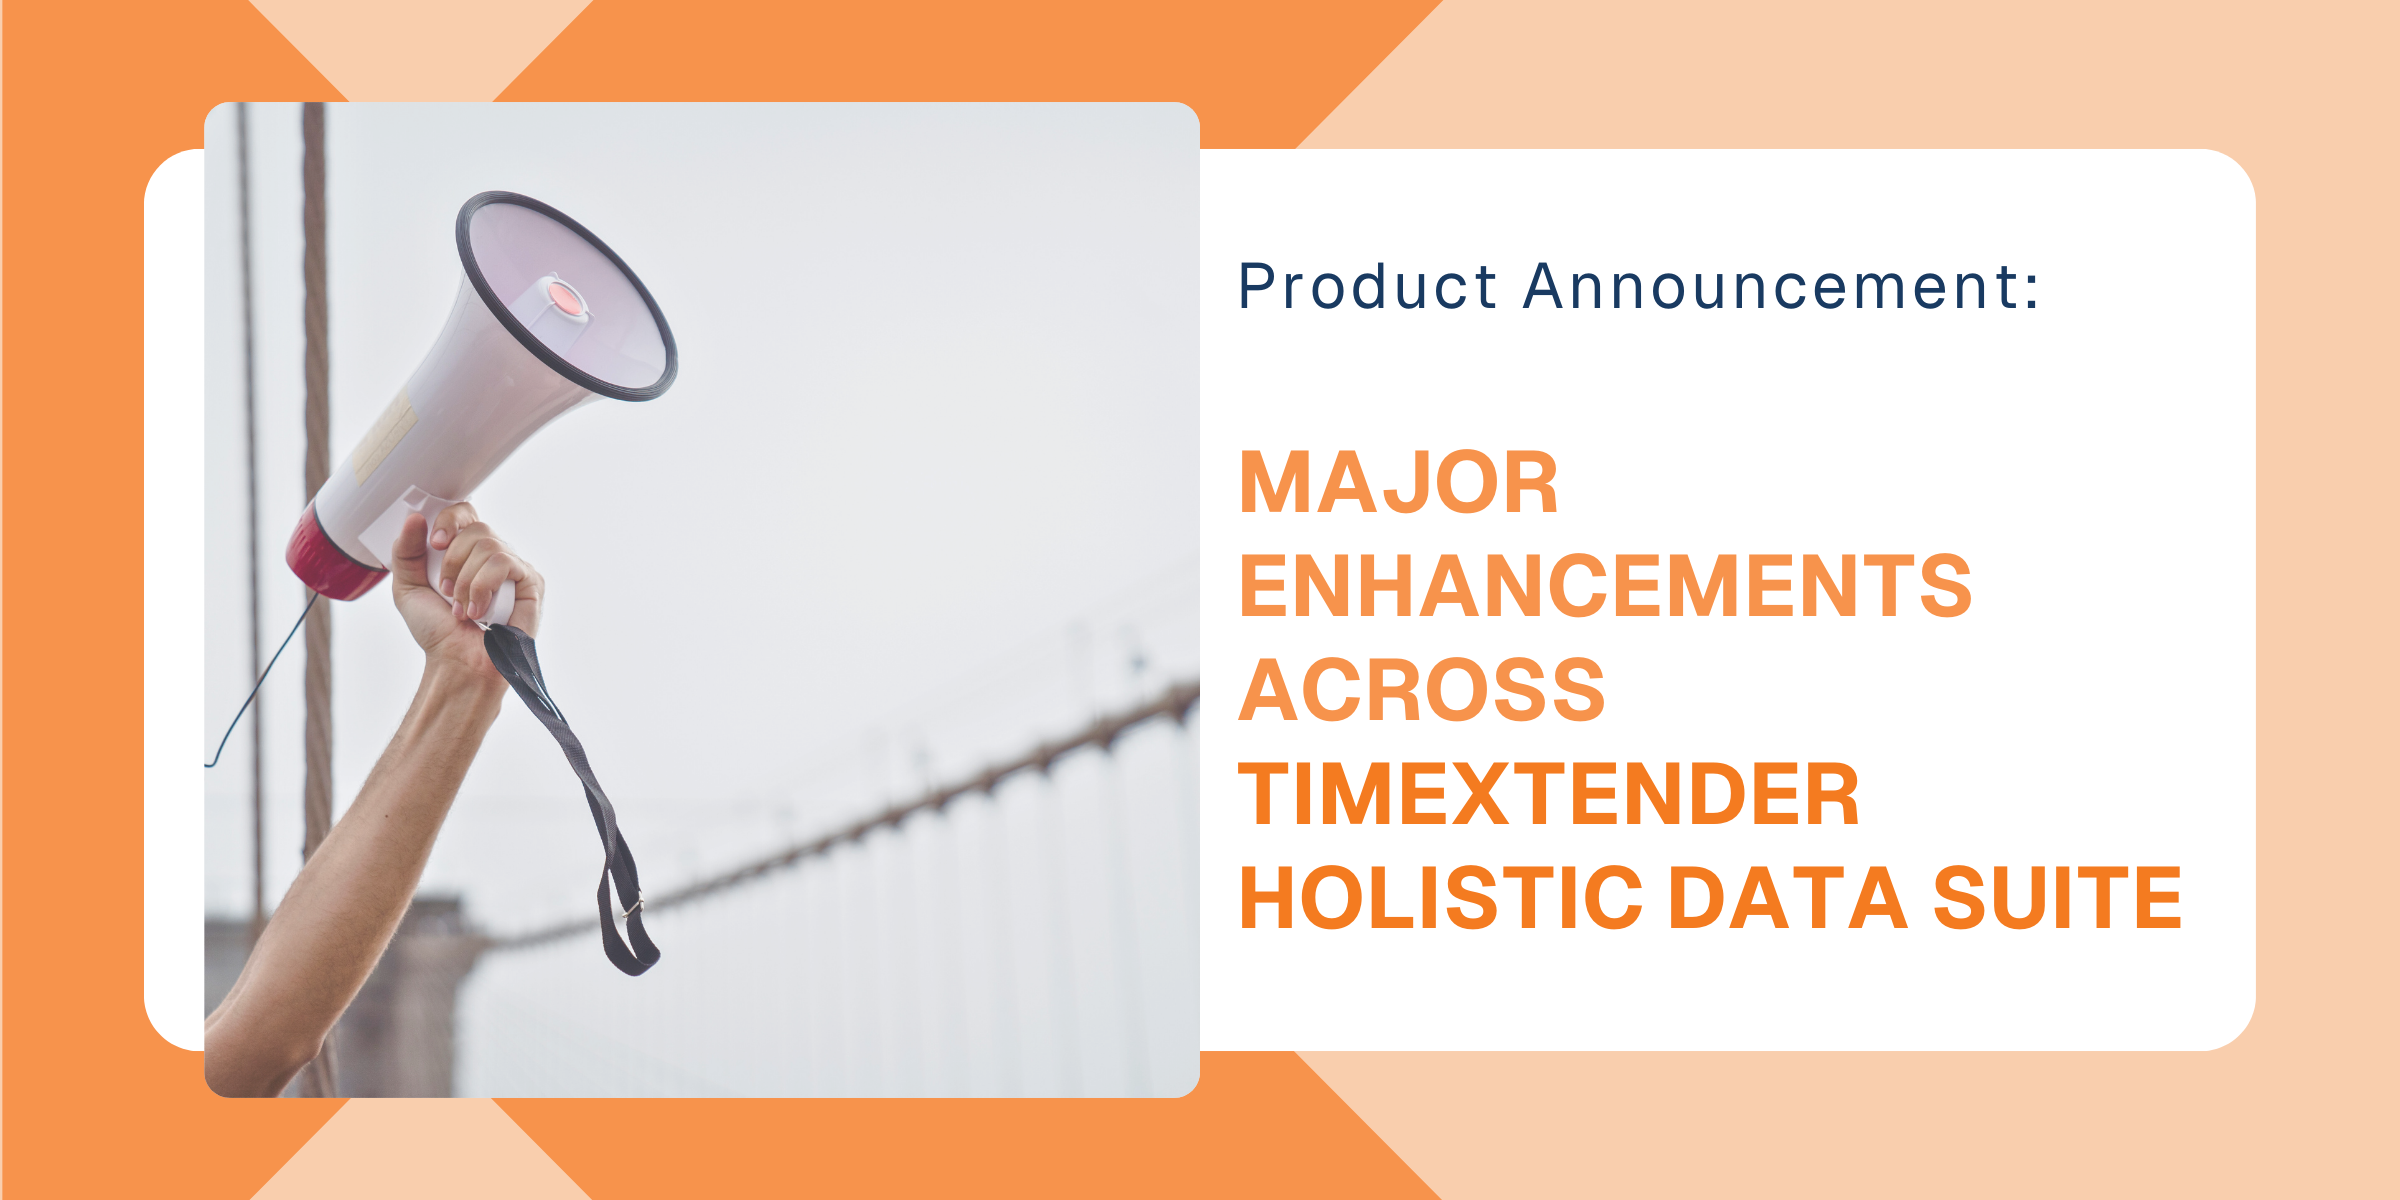 TimeXtender's Major Enhancements Across Holistic Data Suite